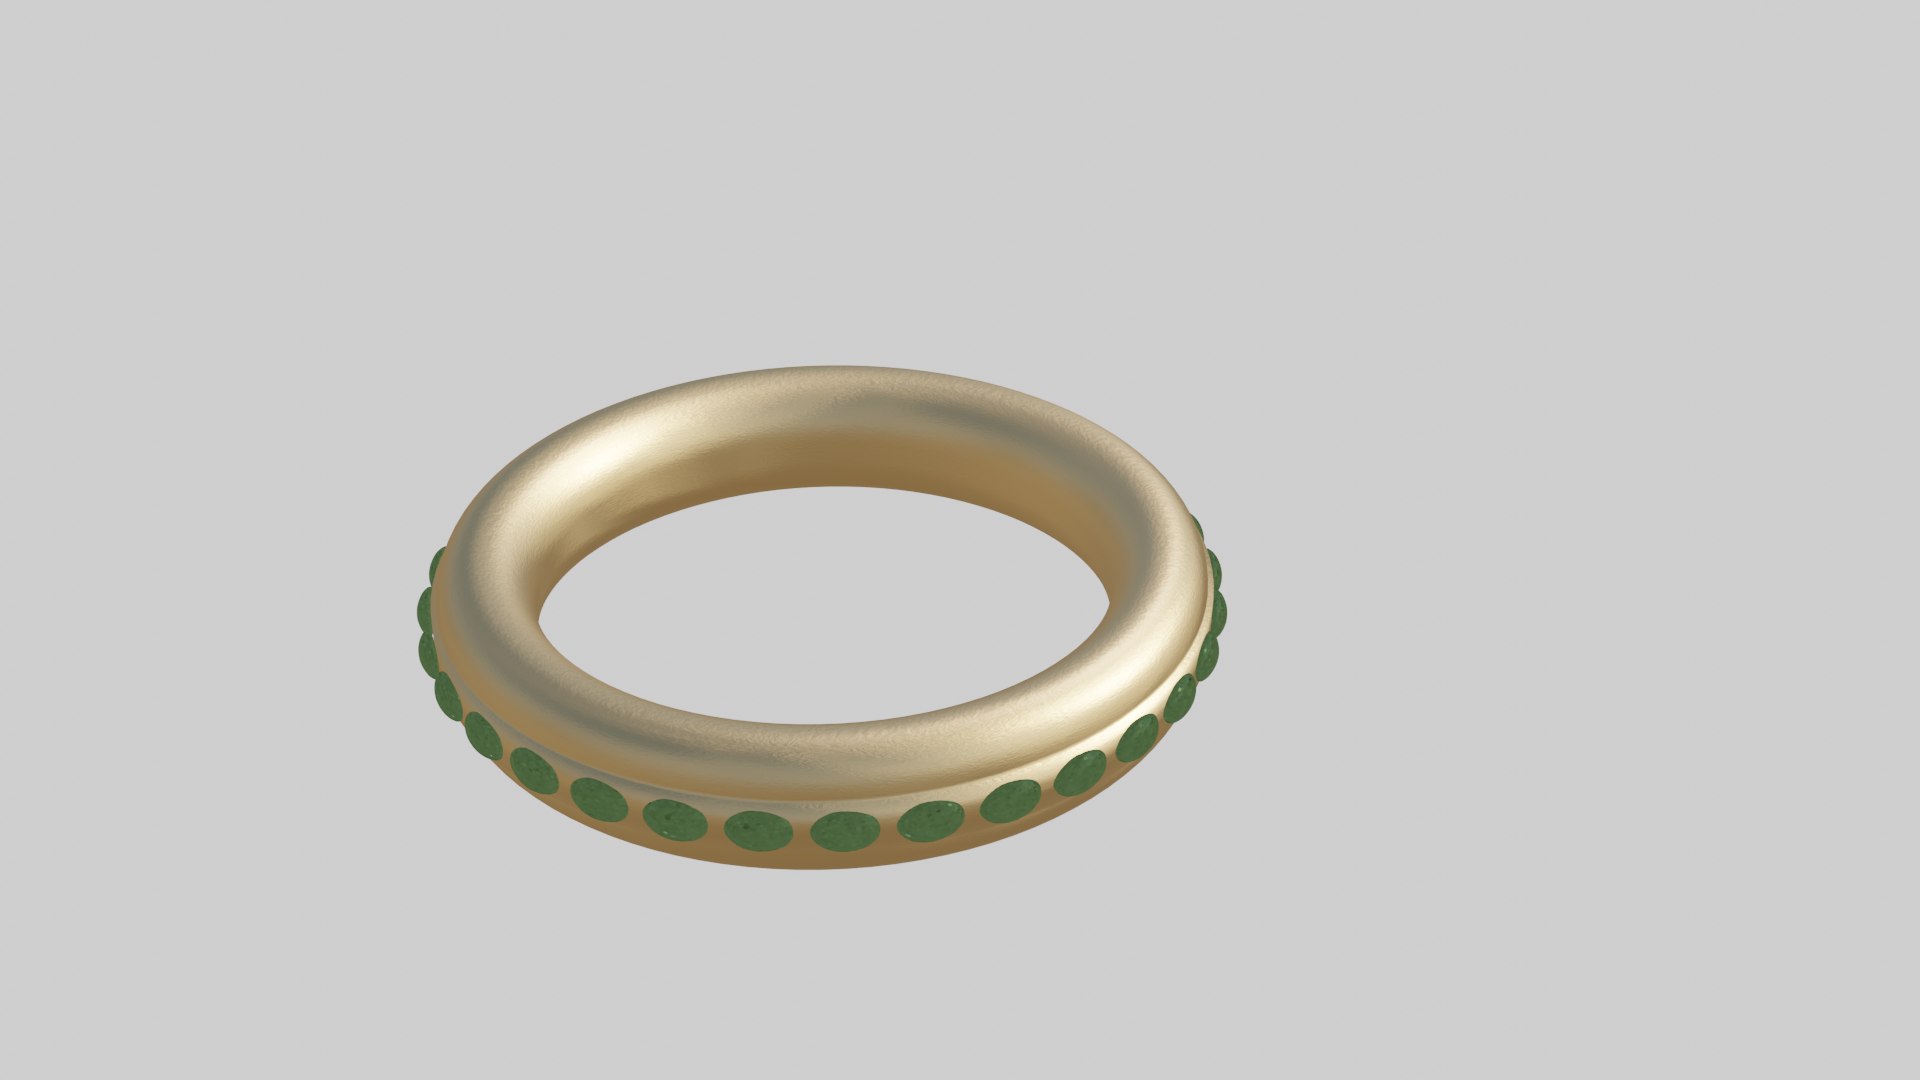 Engagement ring 3D model - TurboSquid 1622985